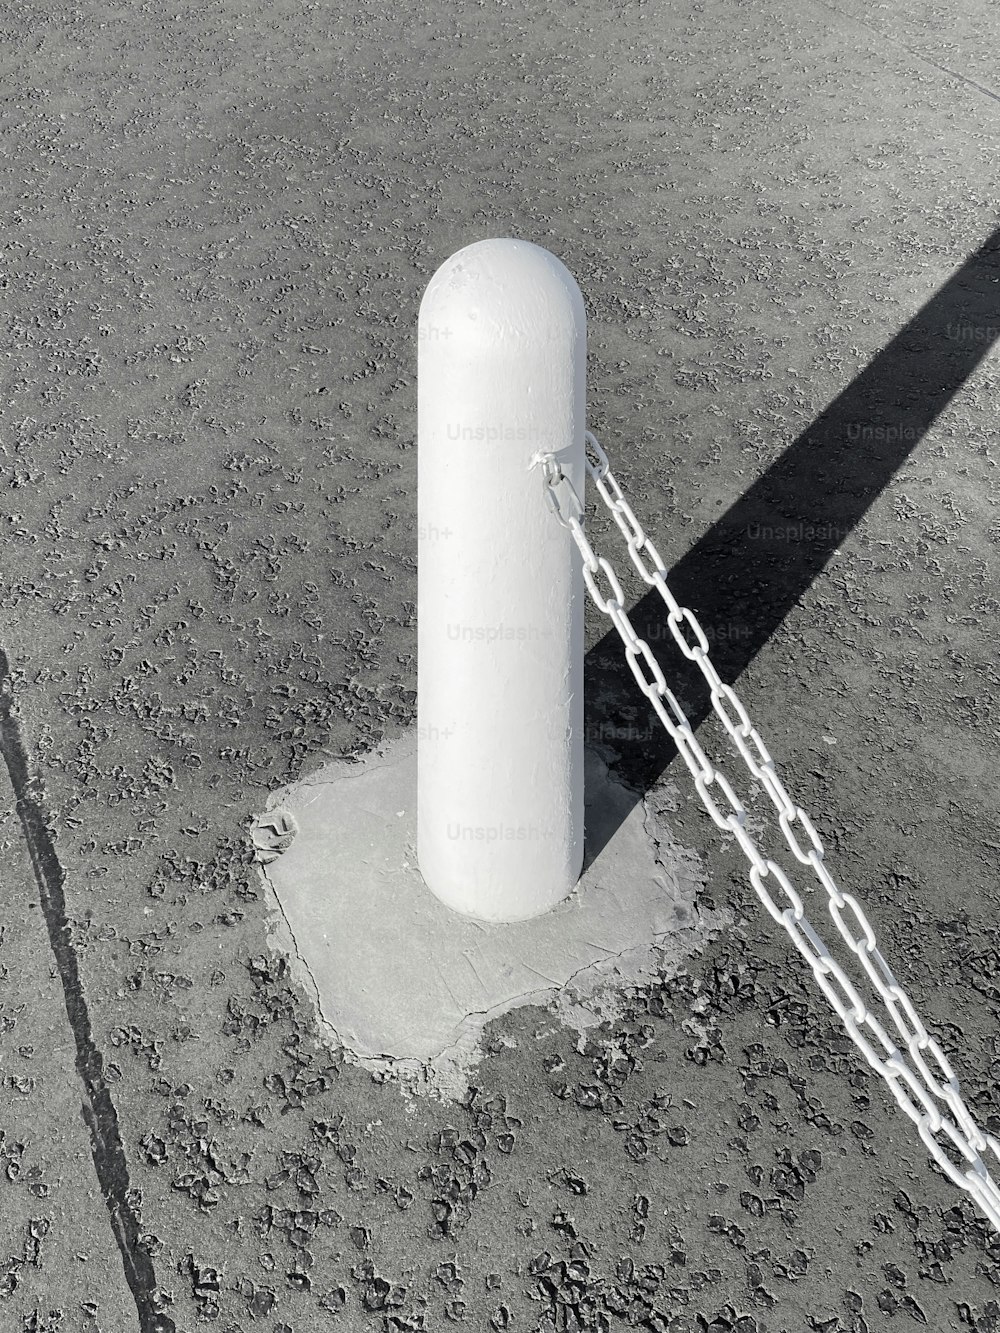 um grande objeto branco acorrentado a um poste